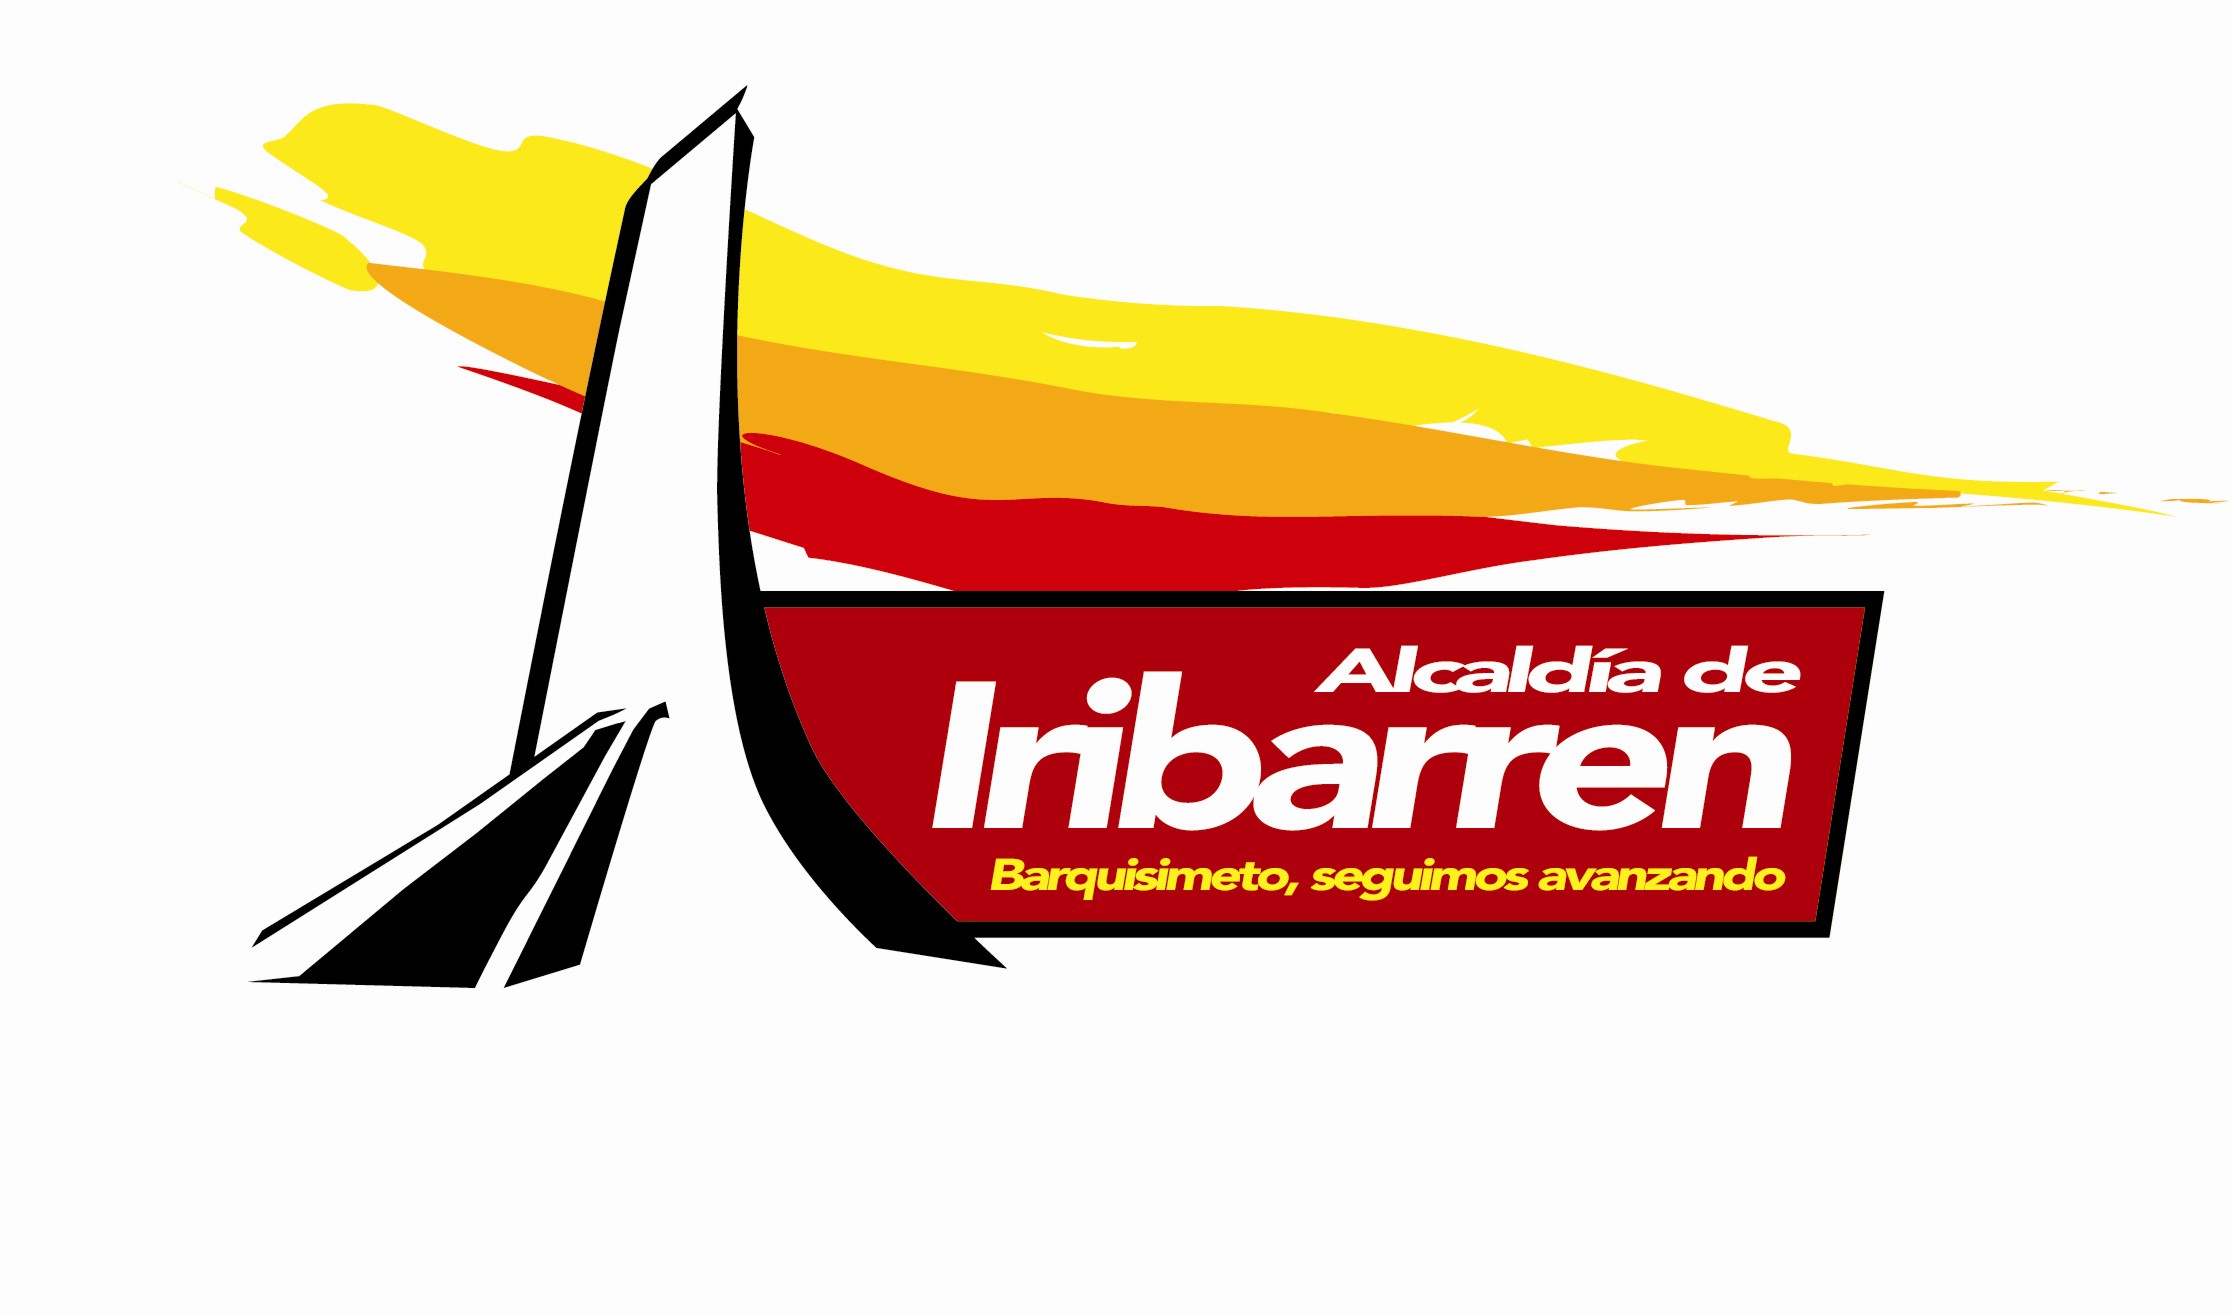 alcaldia de barquisimeto Logo photo - 1